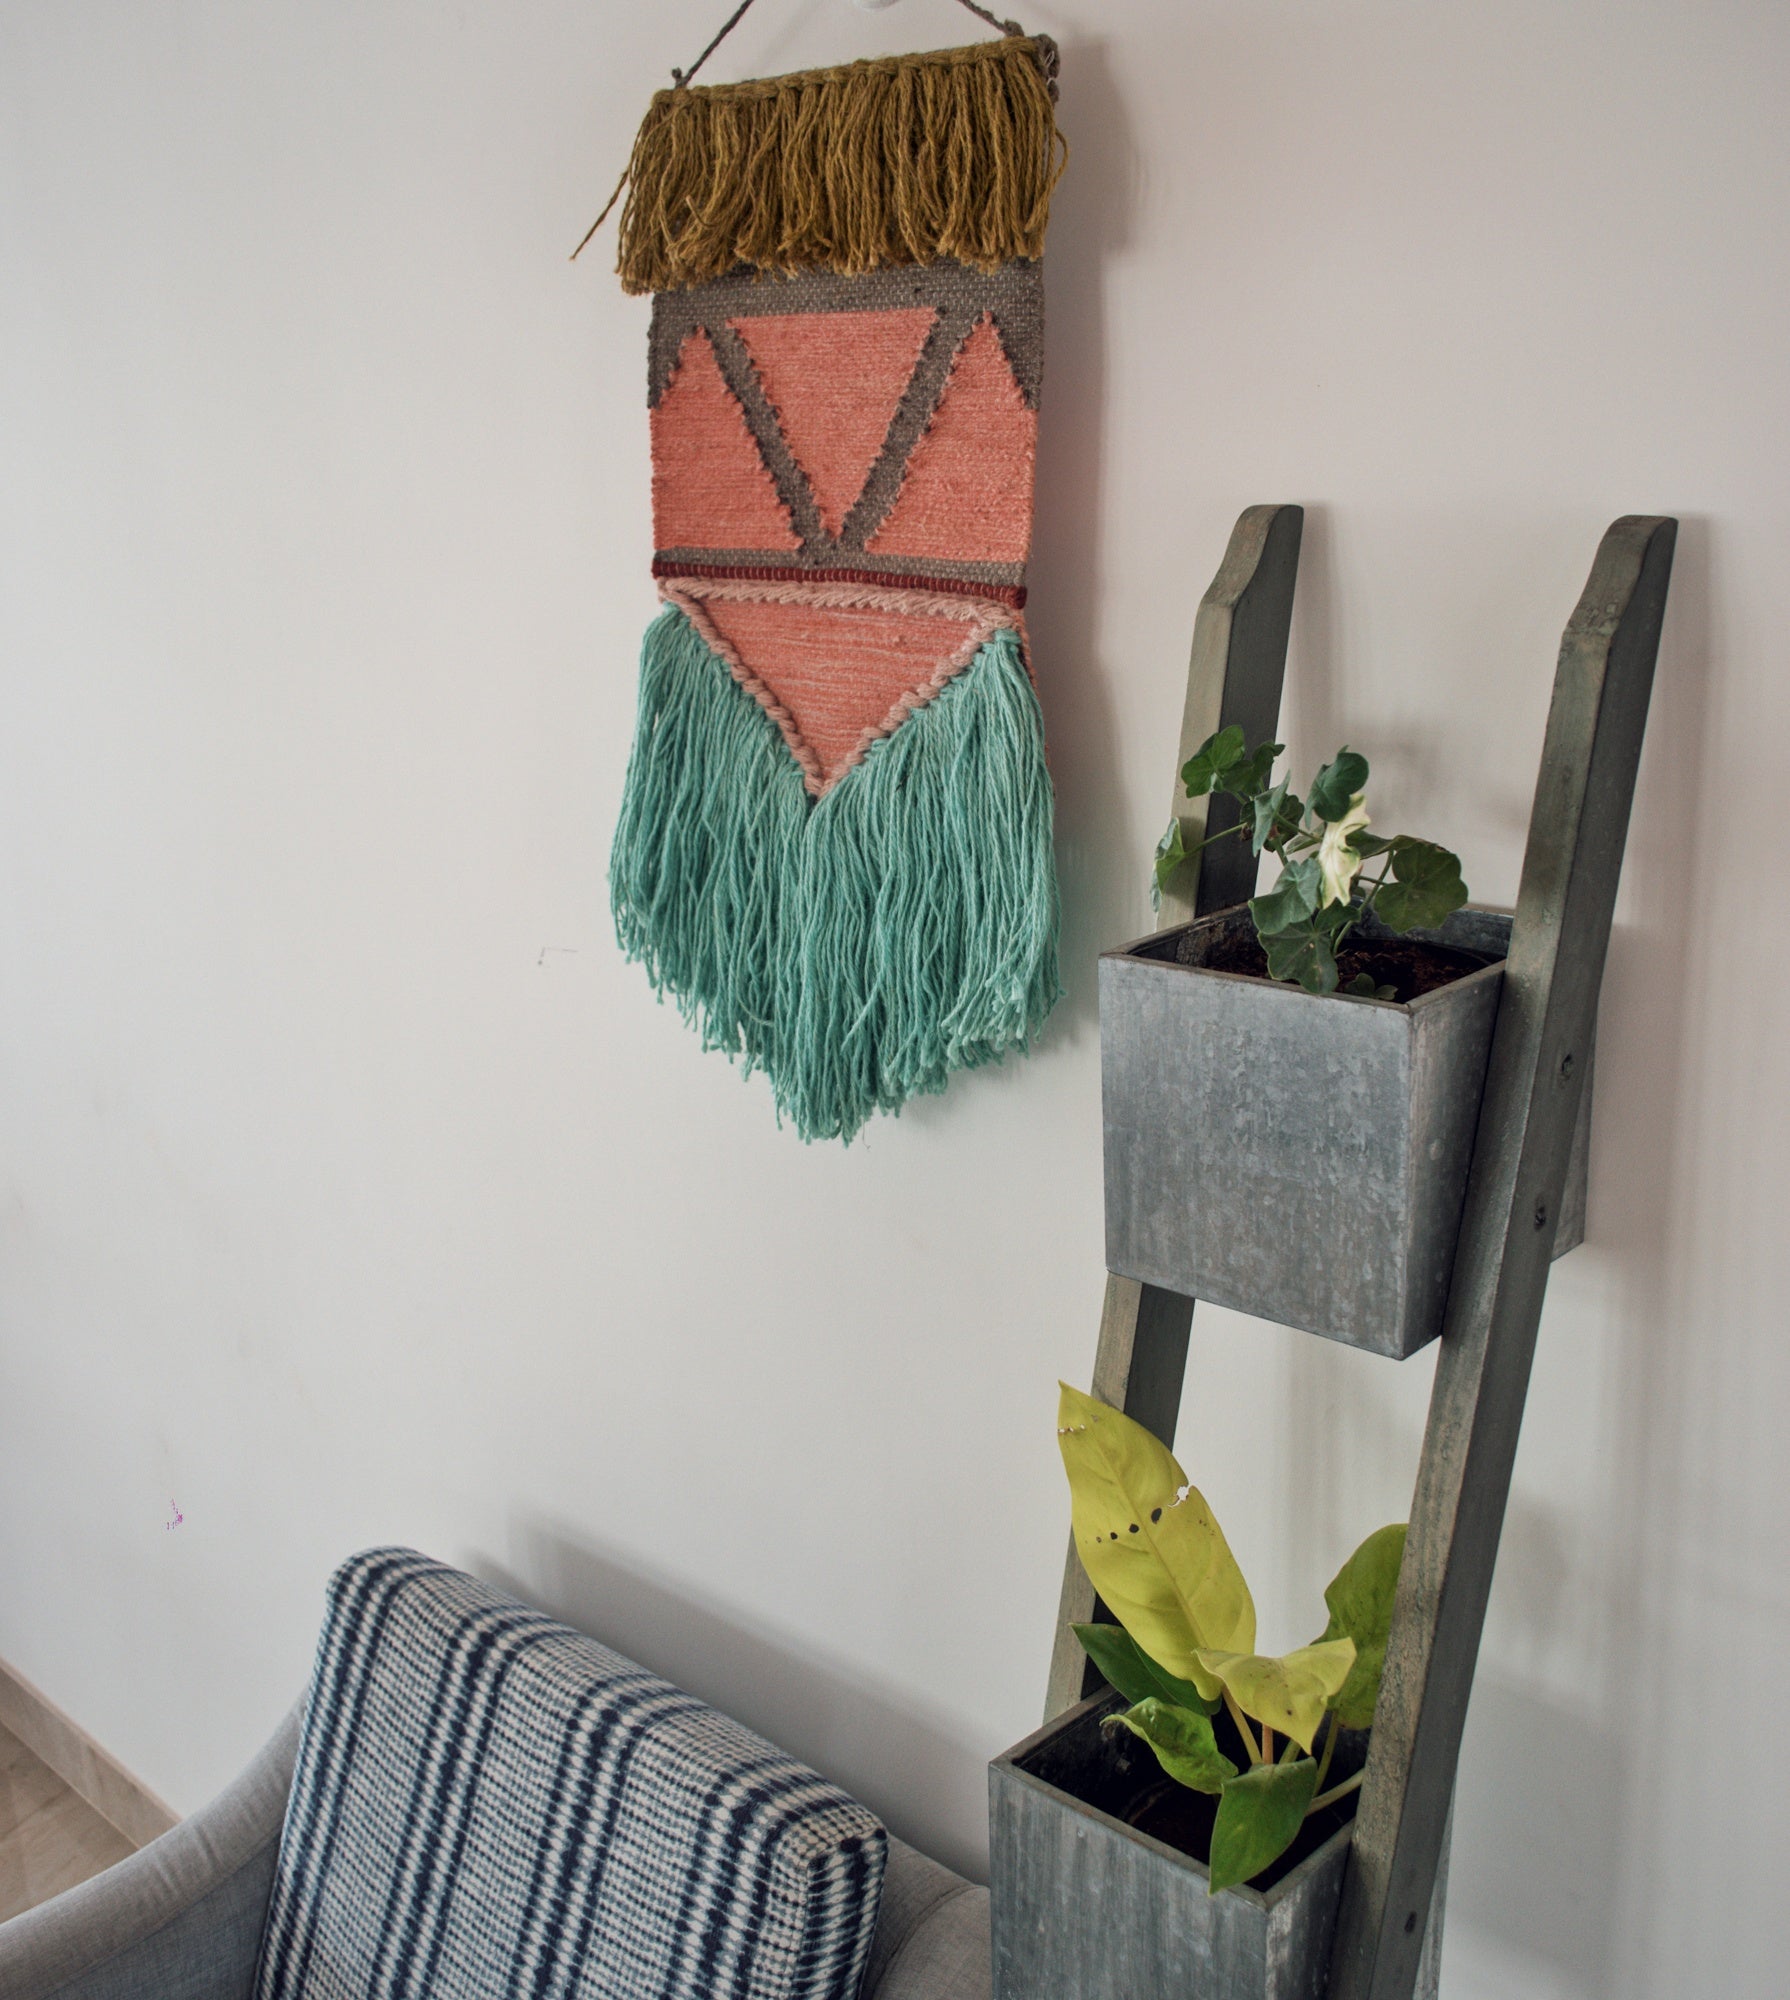 Bohemian wall hanging handmade from natural materials